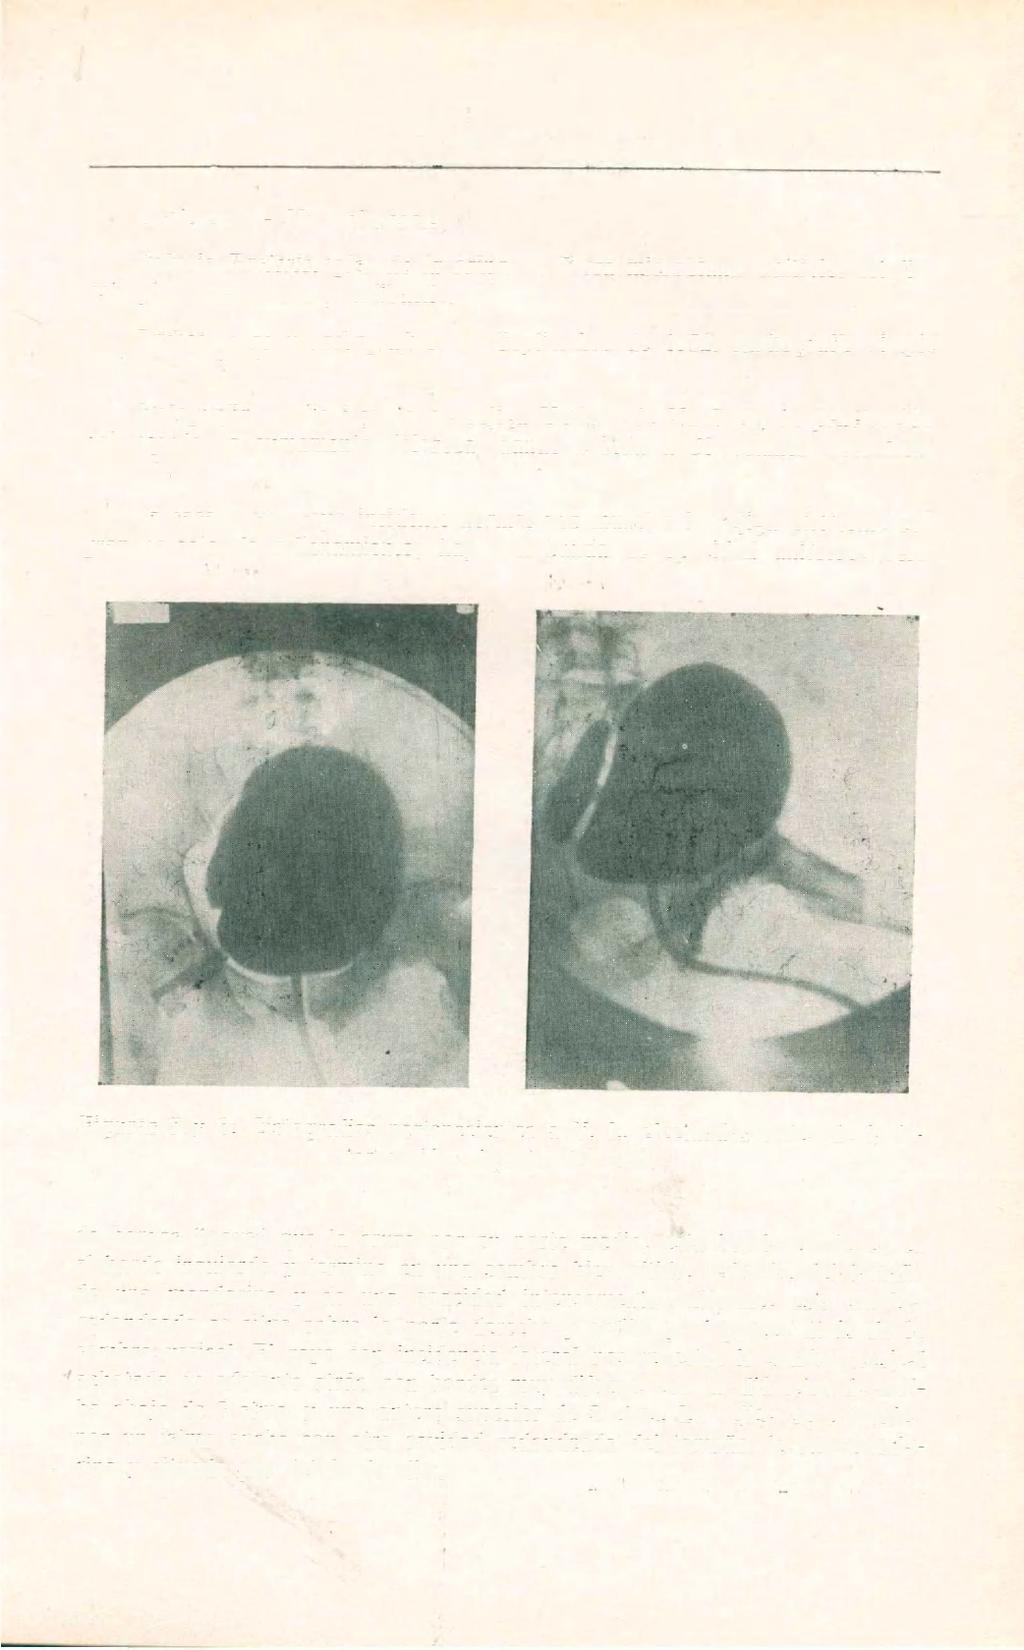 DE UROLOGIA 367 Uréteres. No dolorosos. Estudio Bacteriológico de la orina. Flora microbiana múltiple: estafilo, estrepto, enterococos y colibacilo. Radioscopias y radiografías. Septiembre de 1932.